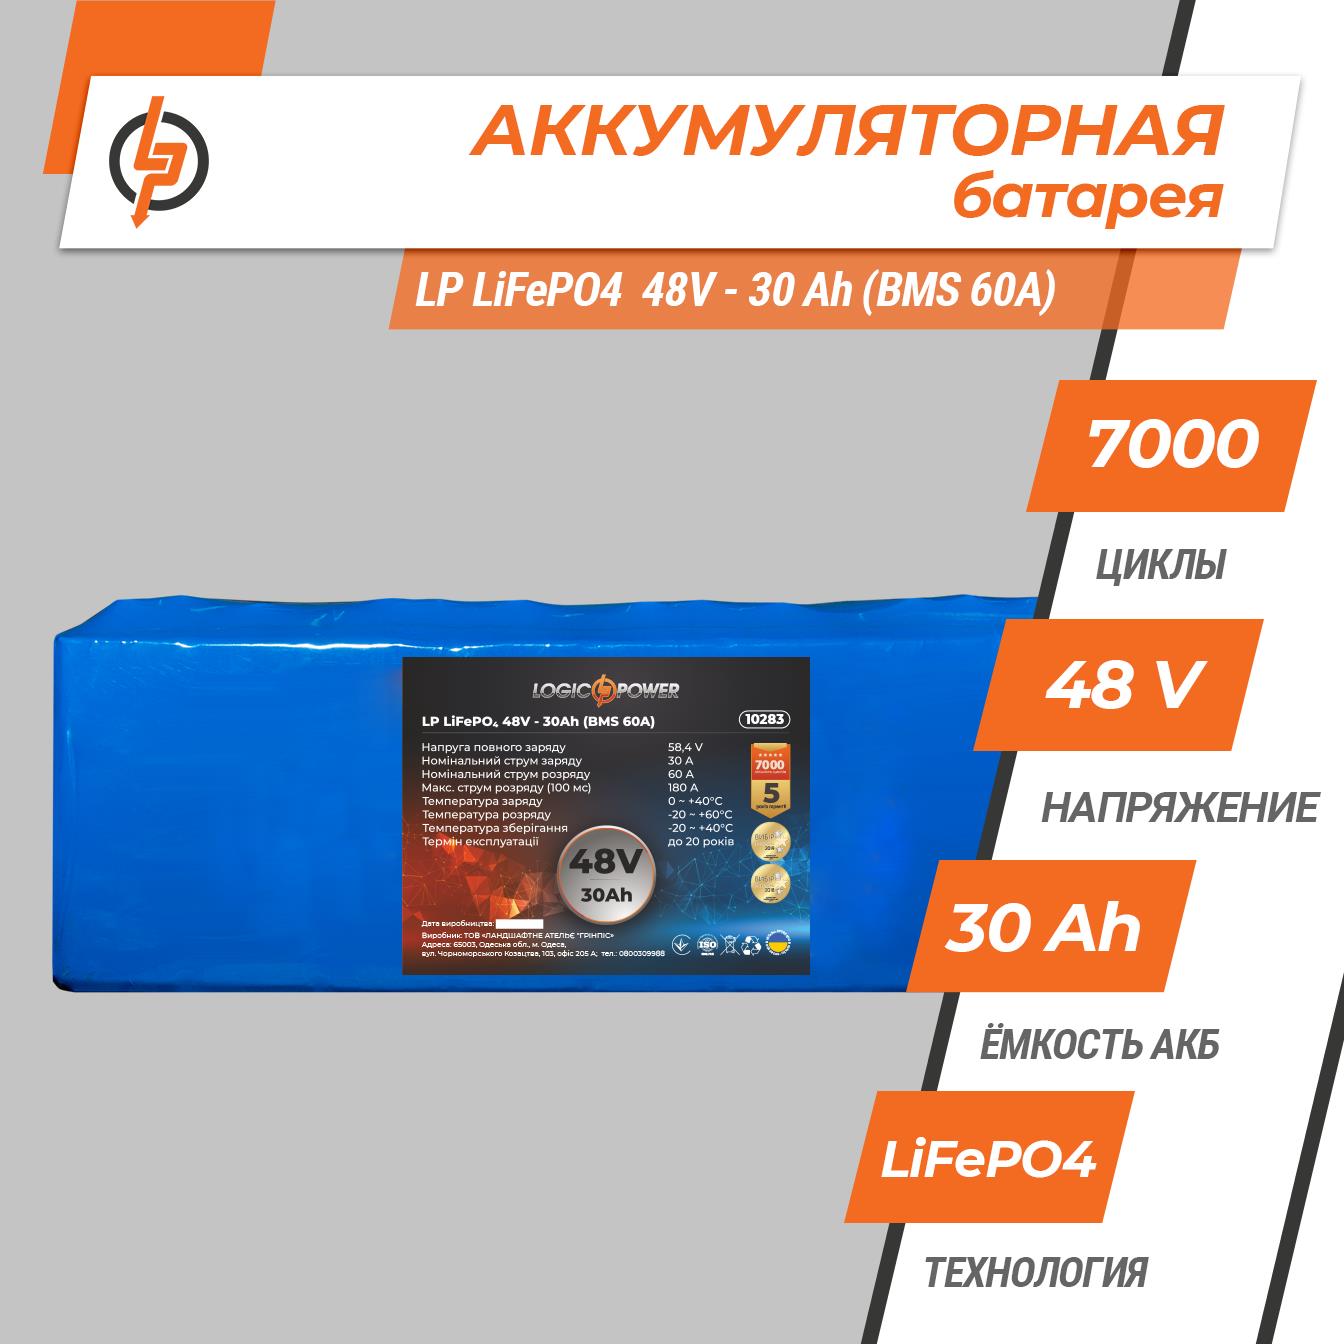 Аккумулятор литий-железо-фосфатный LogicPower LP LiFePO4 48V - 30 Ah (BMS 60A) (10283) цена 0.00 грн - фотография 2